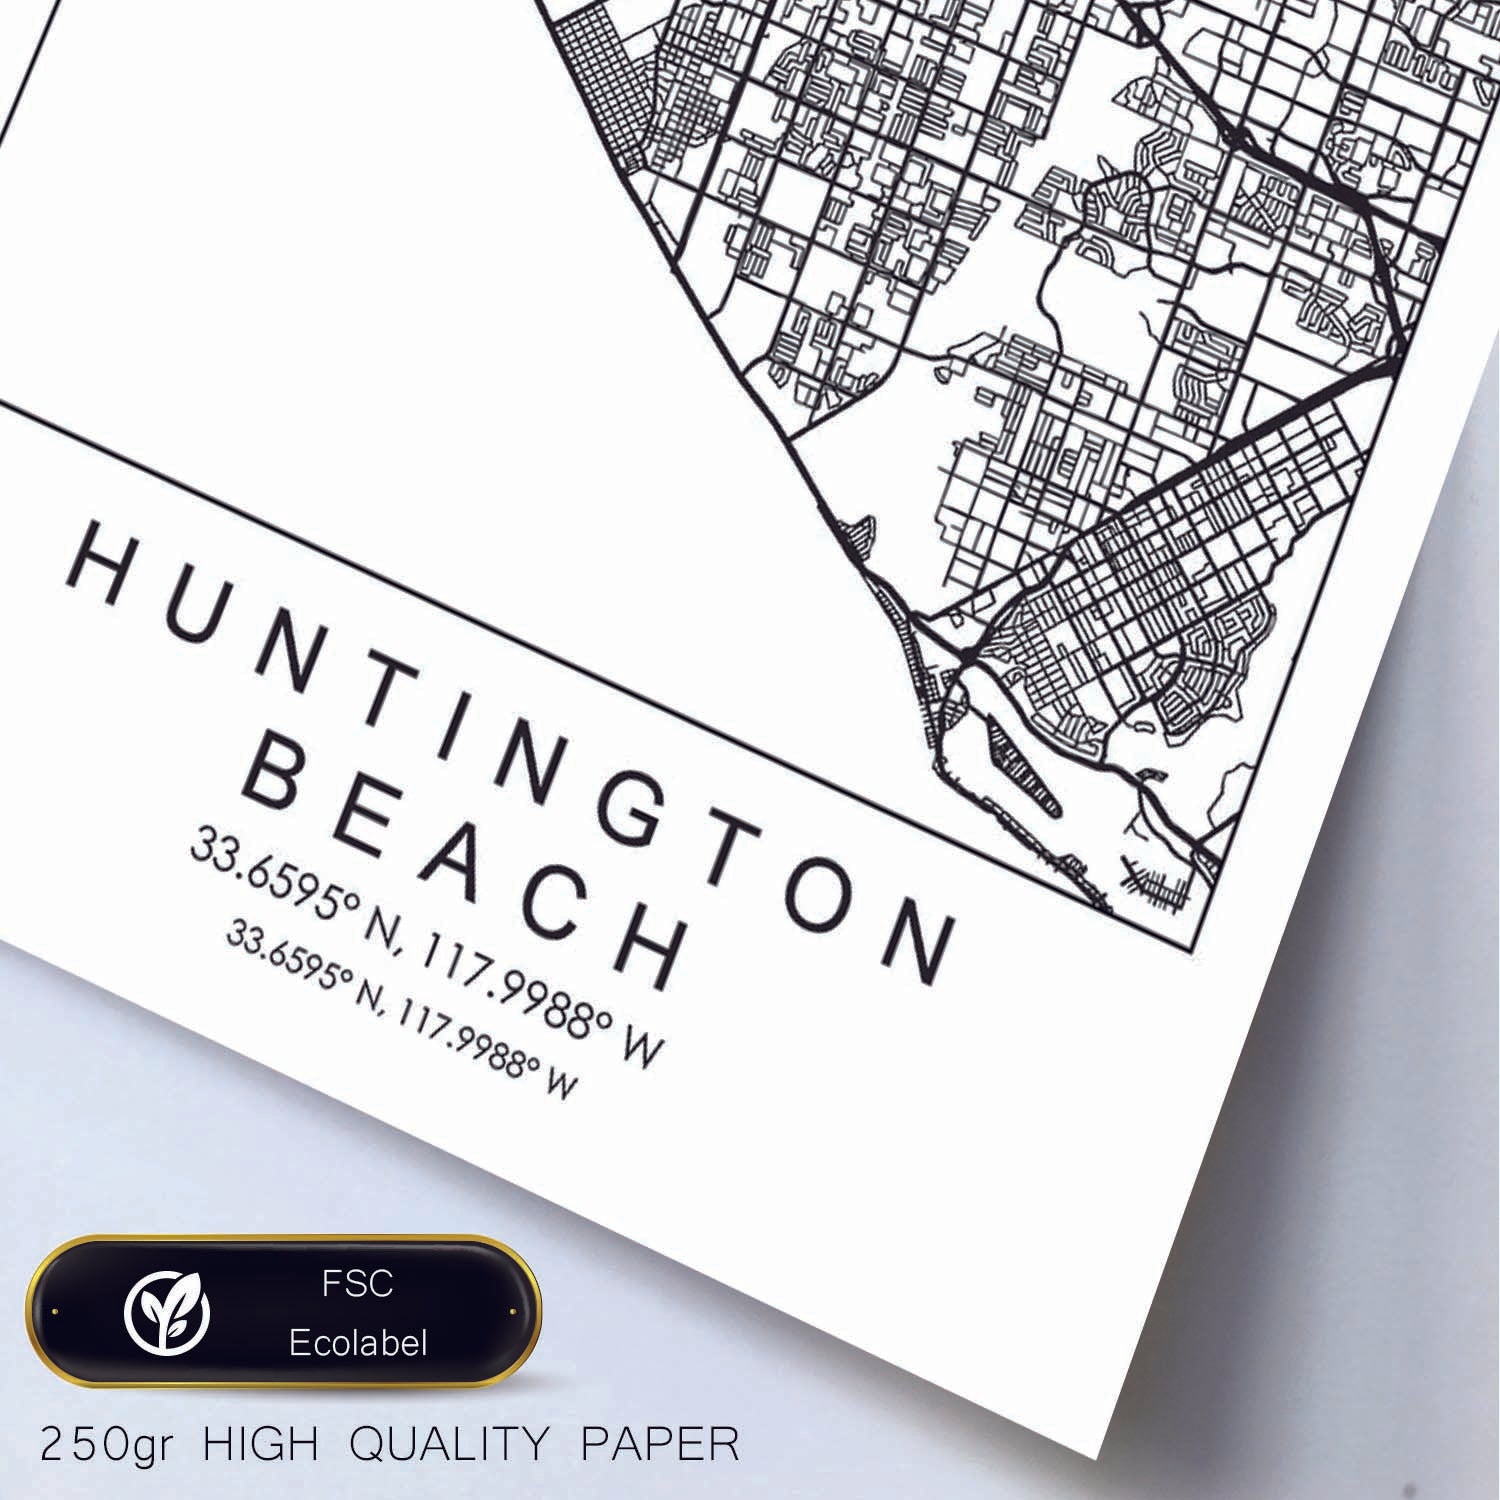 Poster con mapa de Huntington Beach. Lámina de Estados Unidos, con imágenes de mapas y carreteras-Artwork-Nacnic-Nacnic Estudio SL